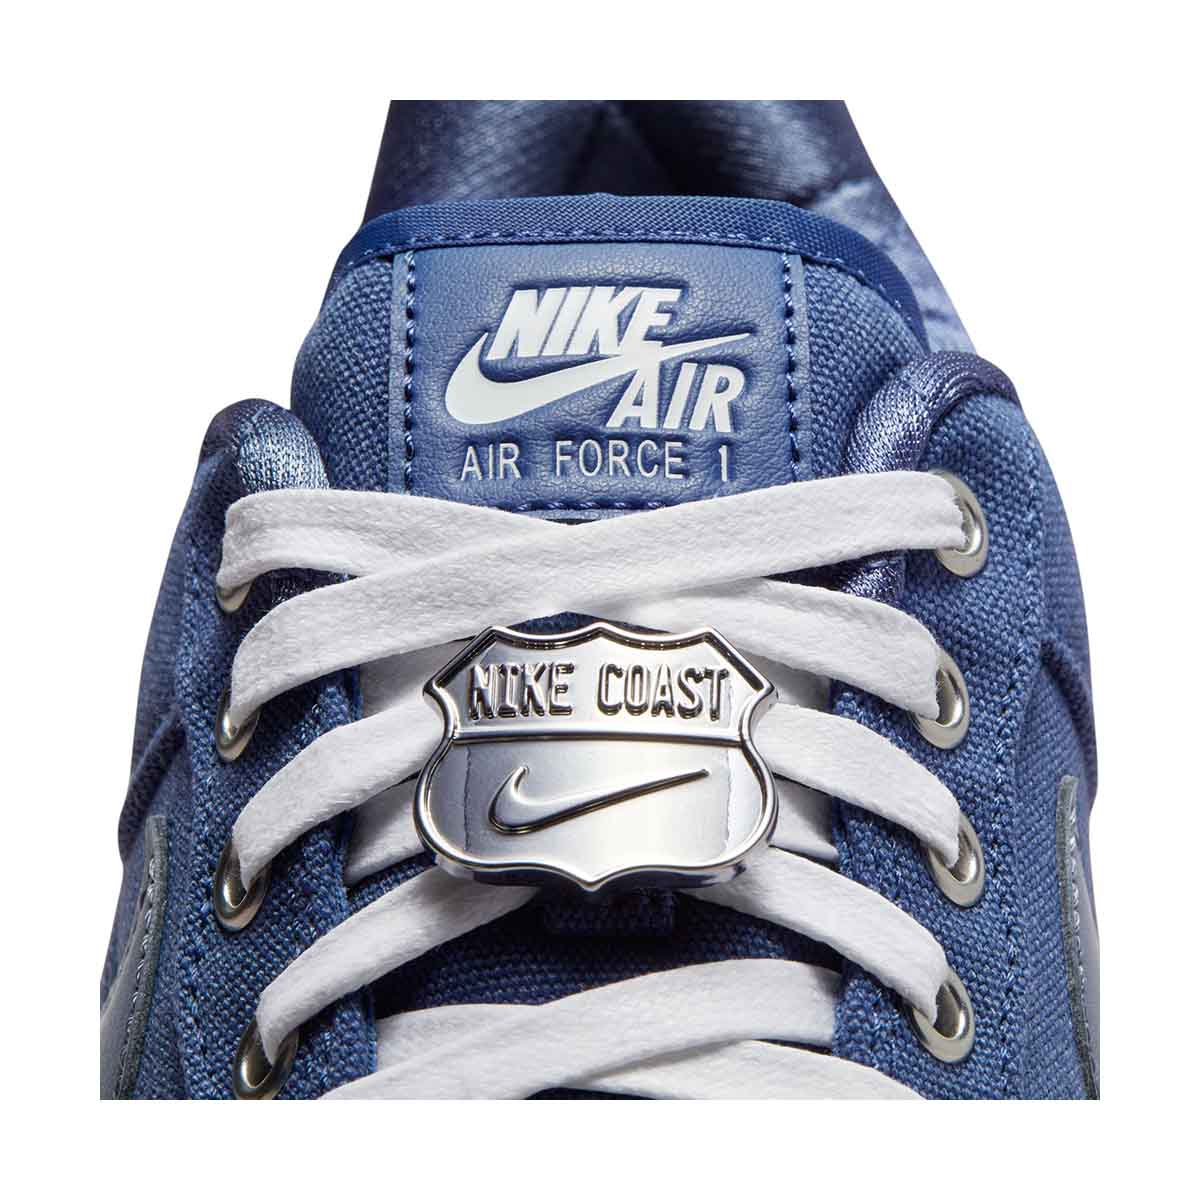 Nike Air Force 1 Low Premium 2 White Black Men's - AT4143-102 - US